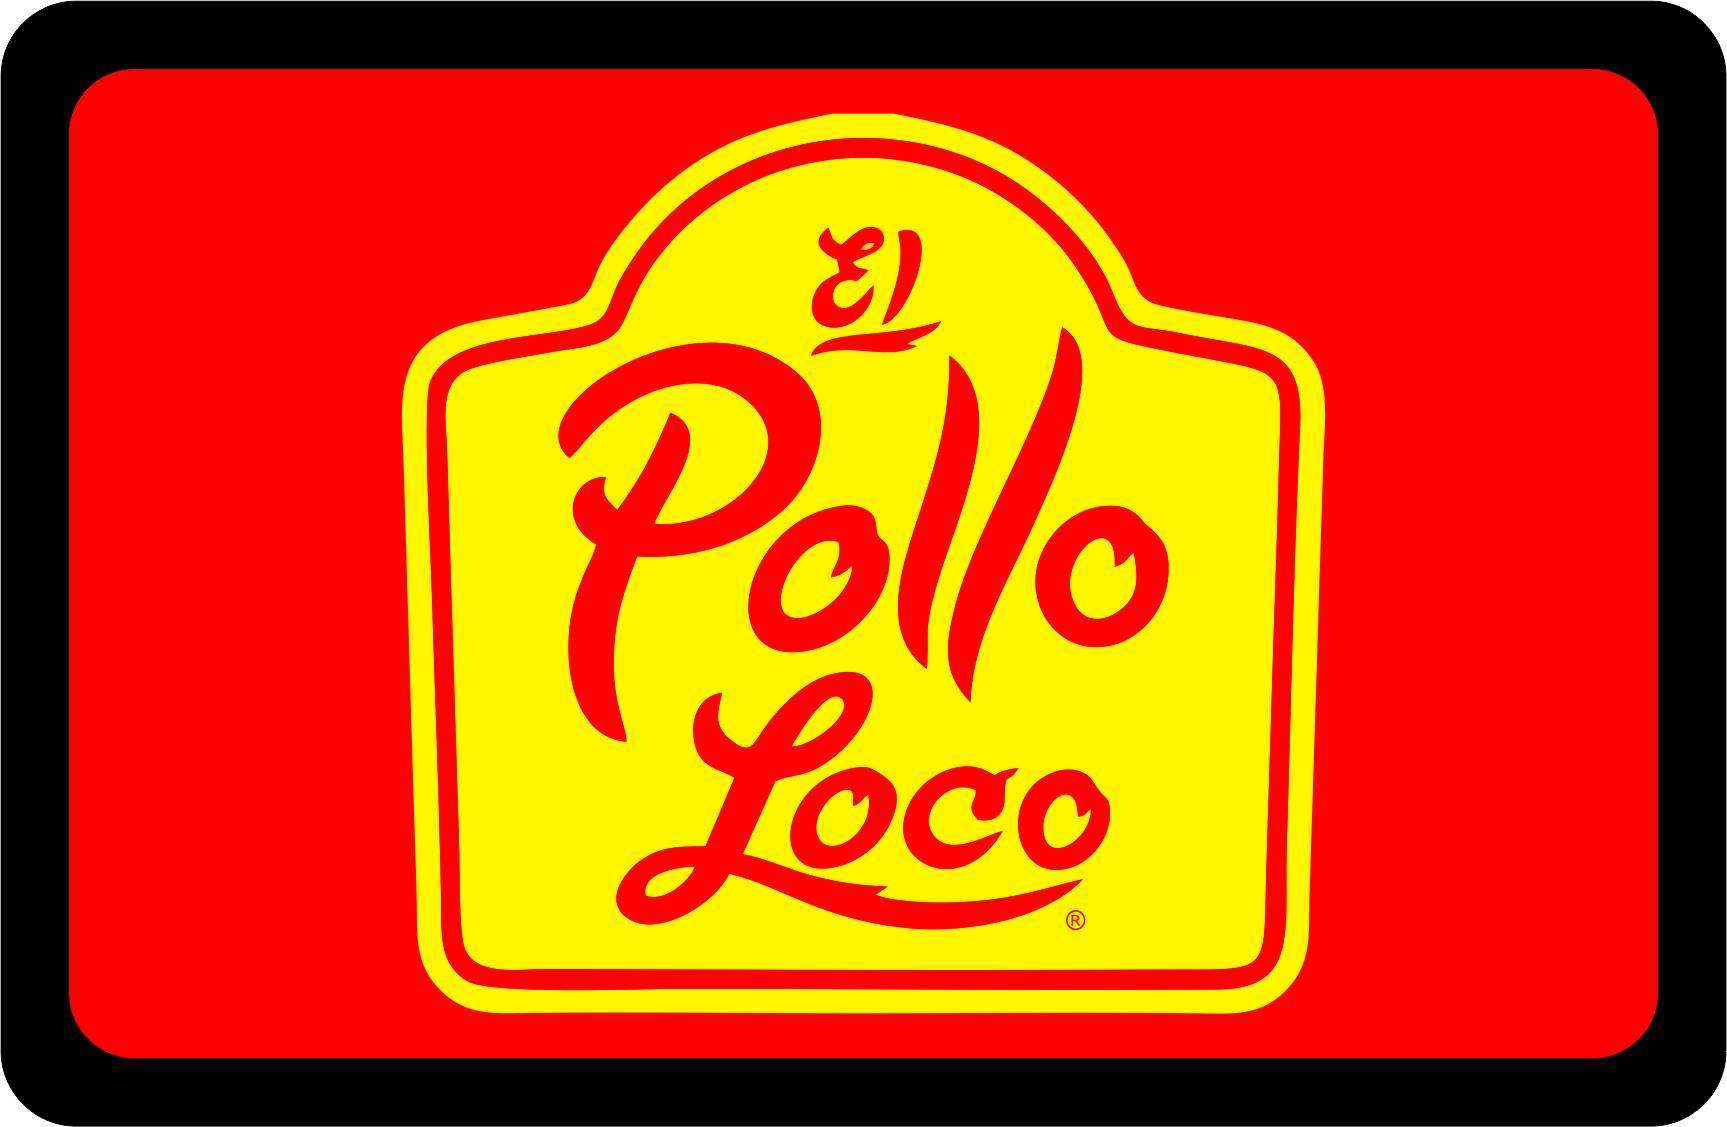 El Pollo Loco - Custom Tow Hitch Cover